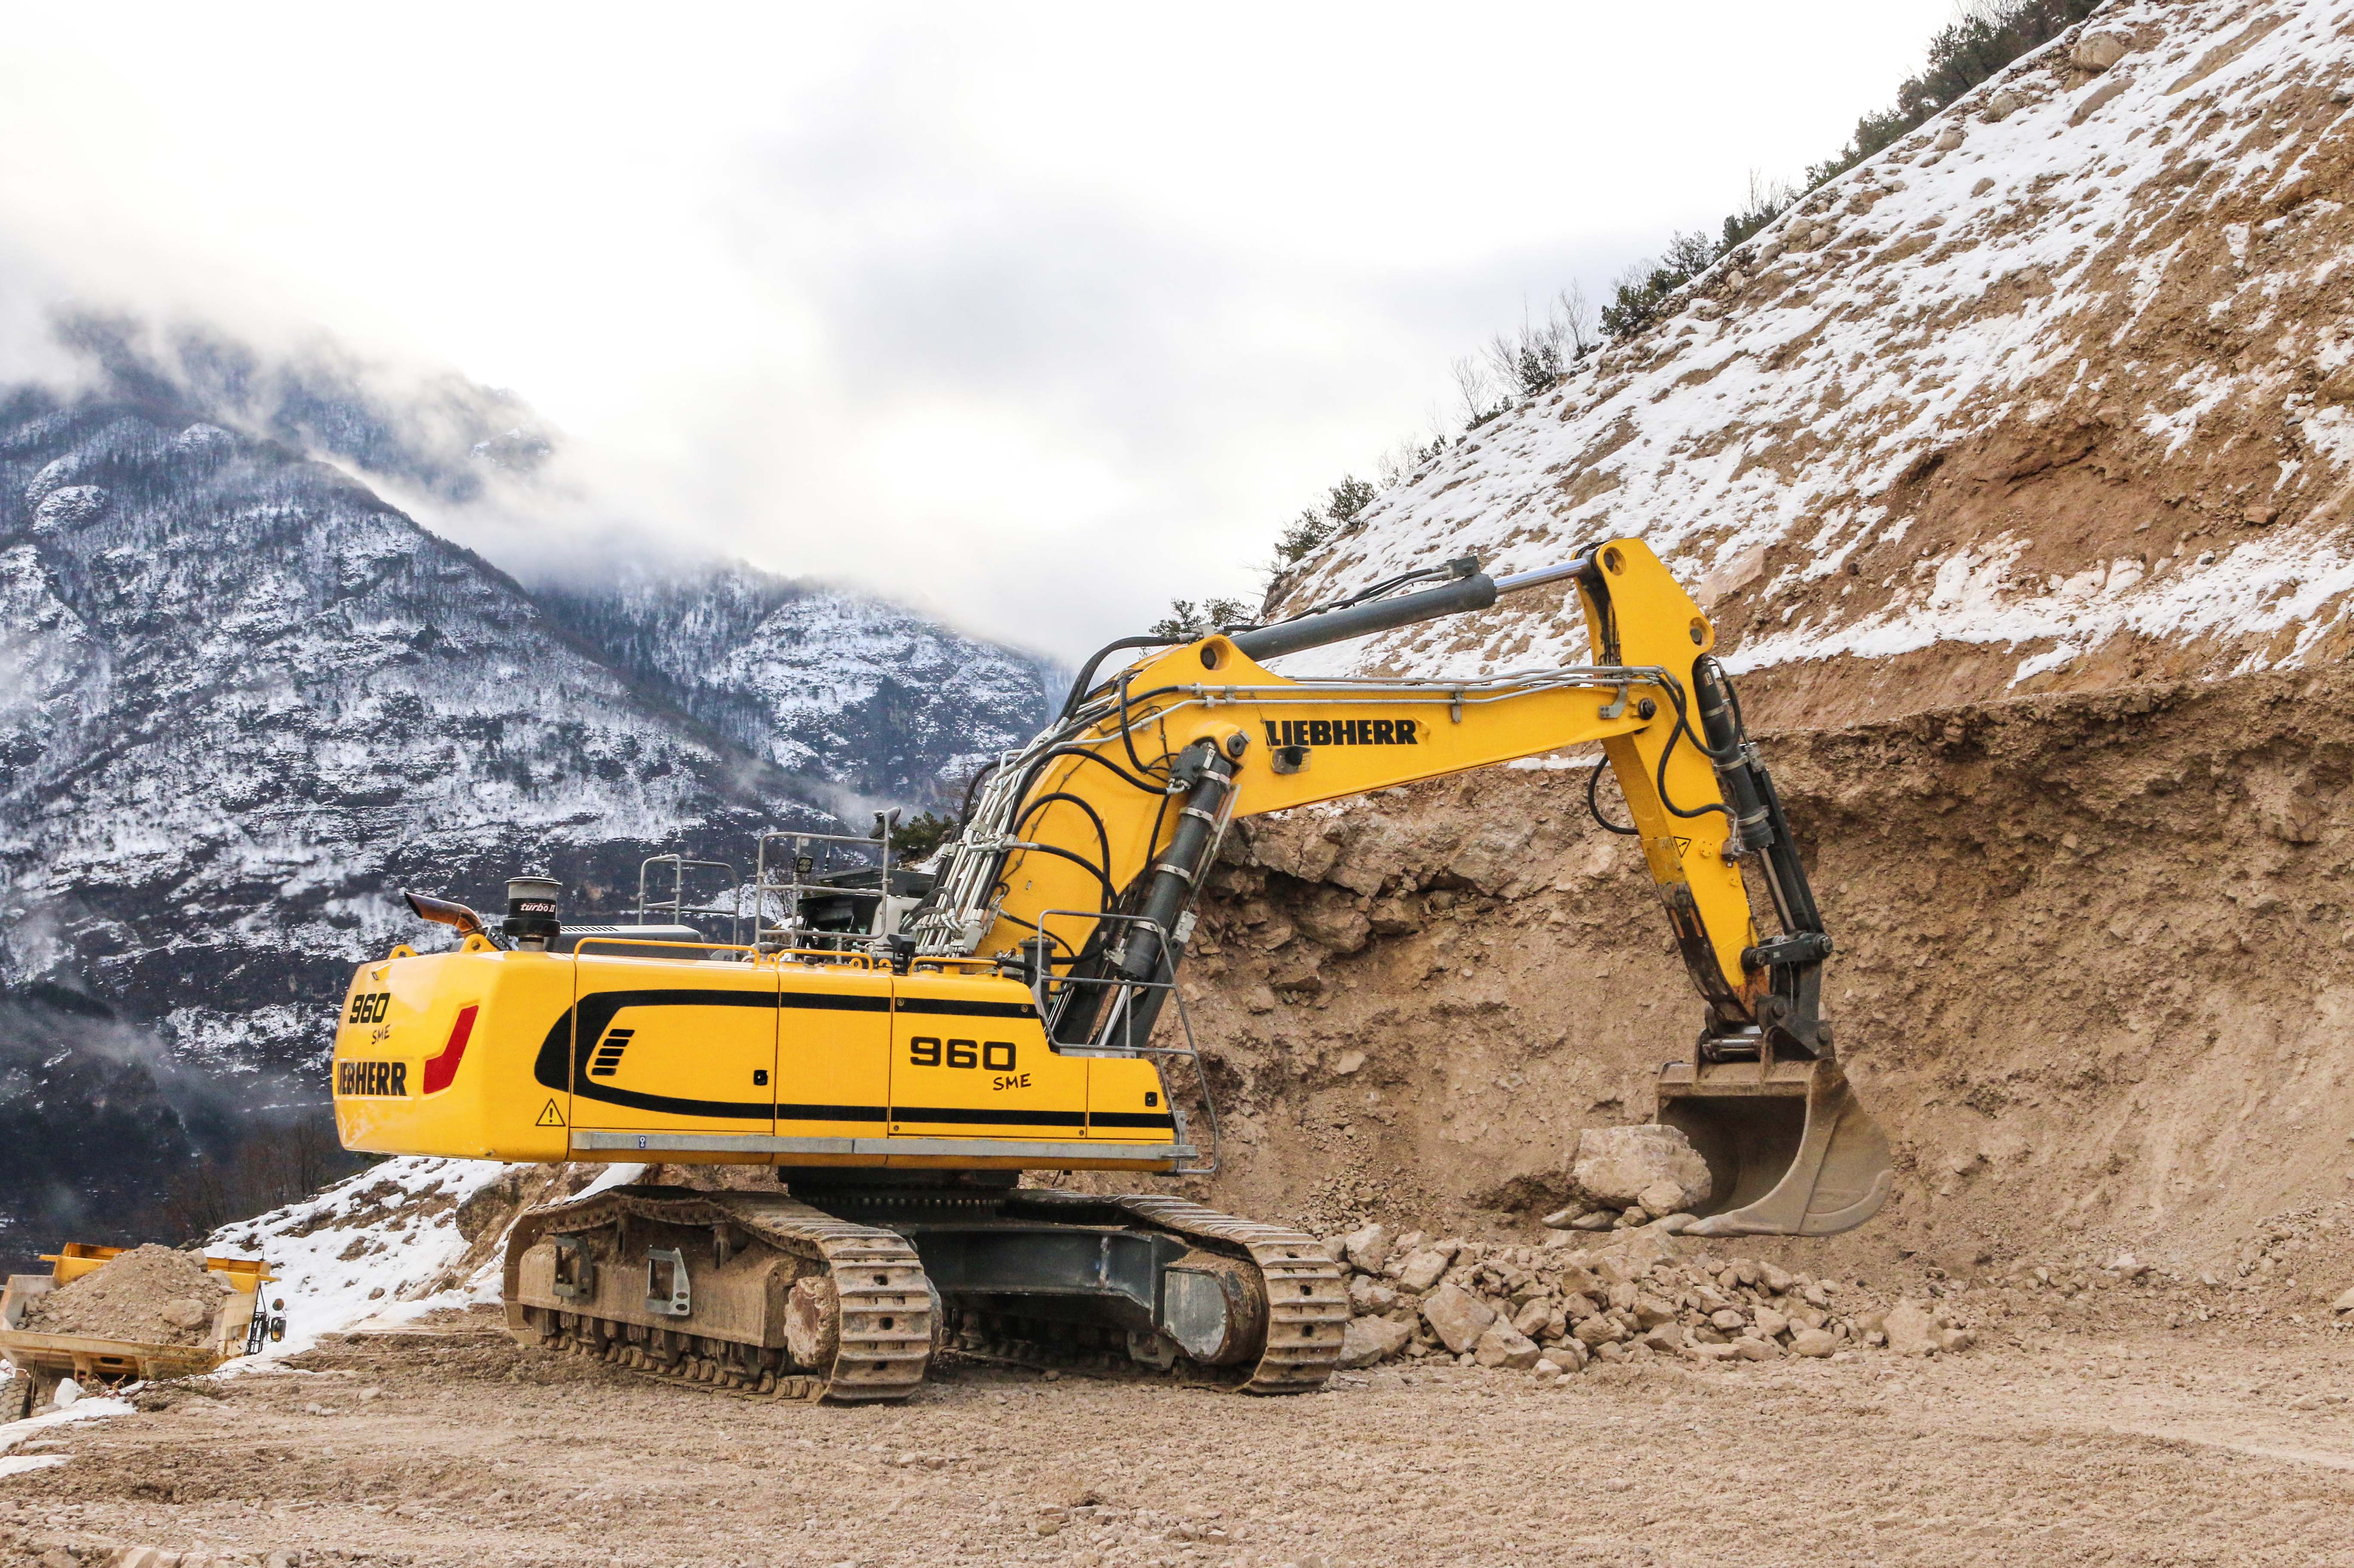 Der Raupenbagger R 960 SME hat sich seit 2012 in Steinbrüchen und Bergbaubetrieben auf der ganzen Welt bewährt